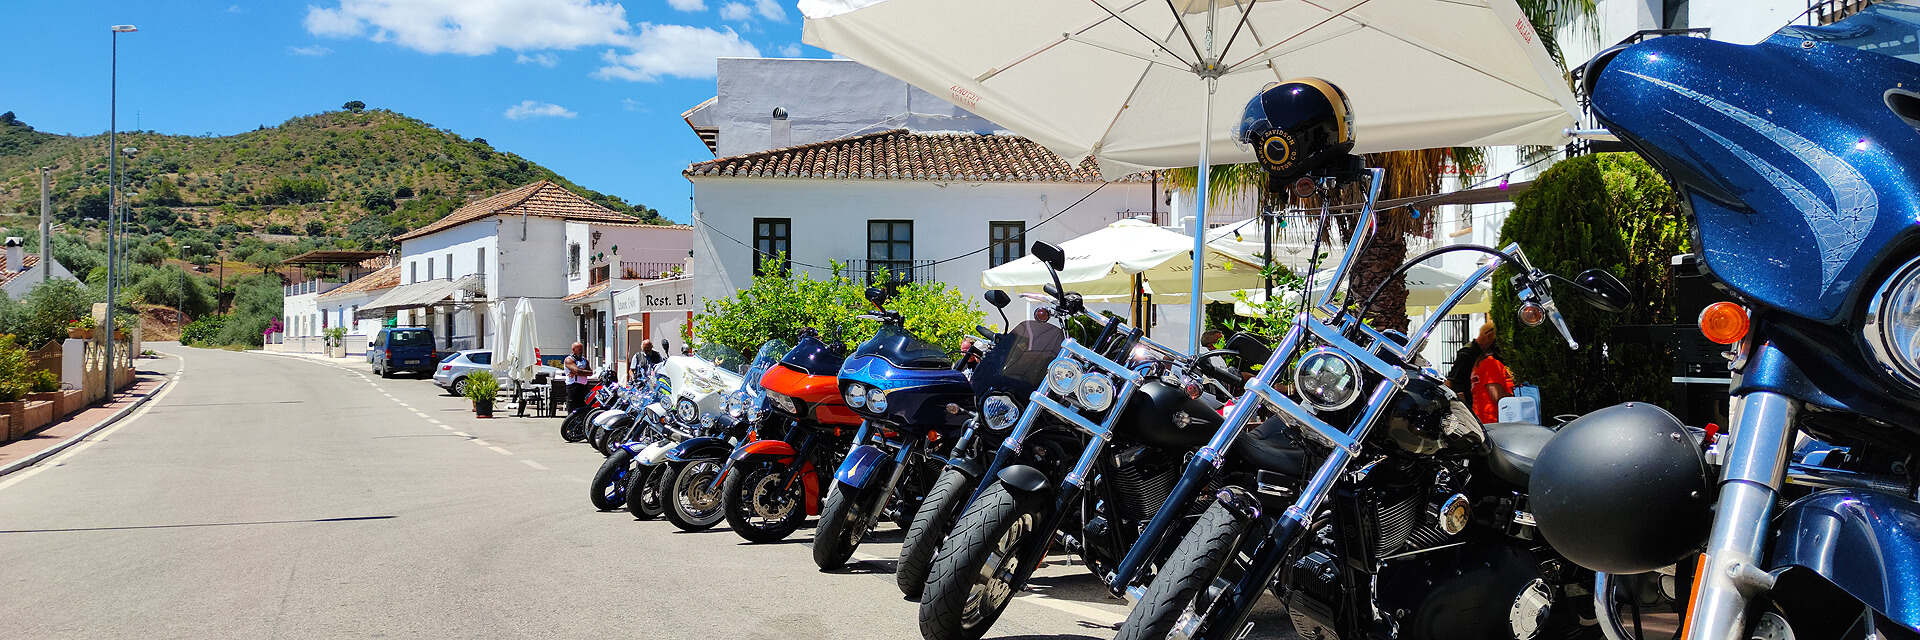 Impressionen von den Routen unserer Motorradtouren und Ausfahrten in Andalusien. Motorradreisen mit TourGuide in Spanien.